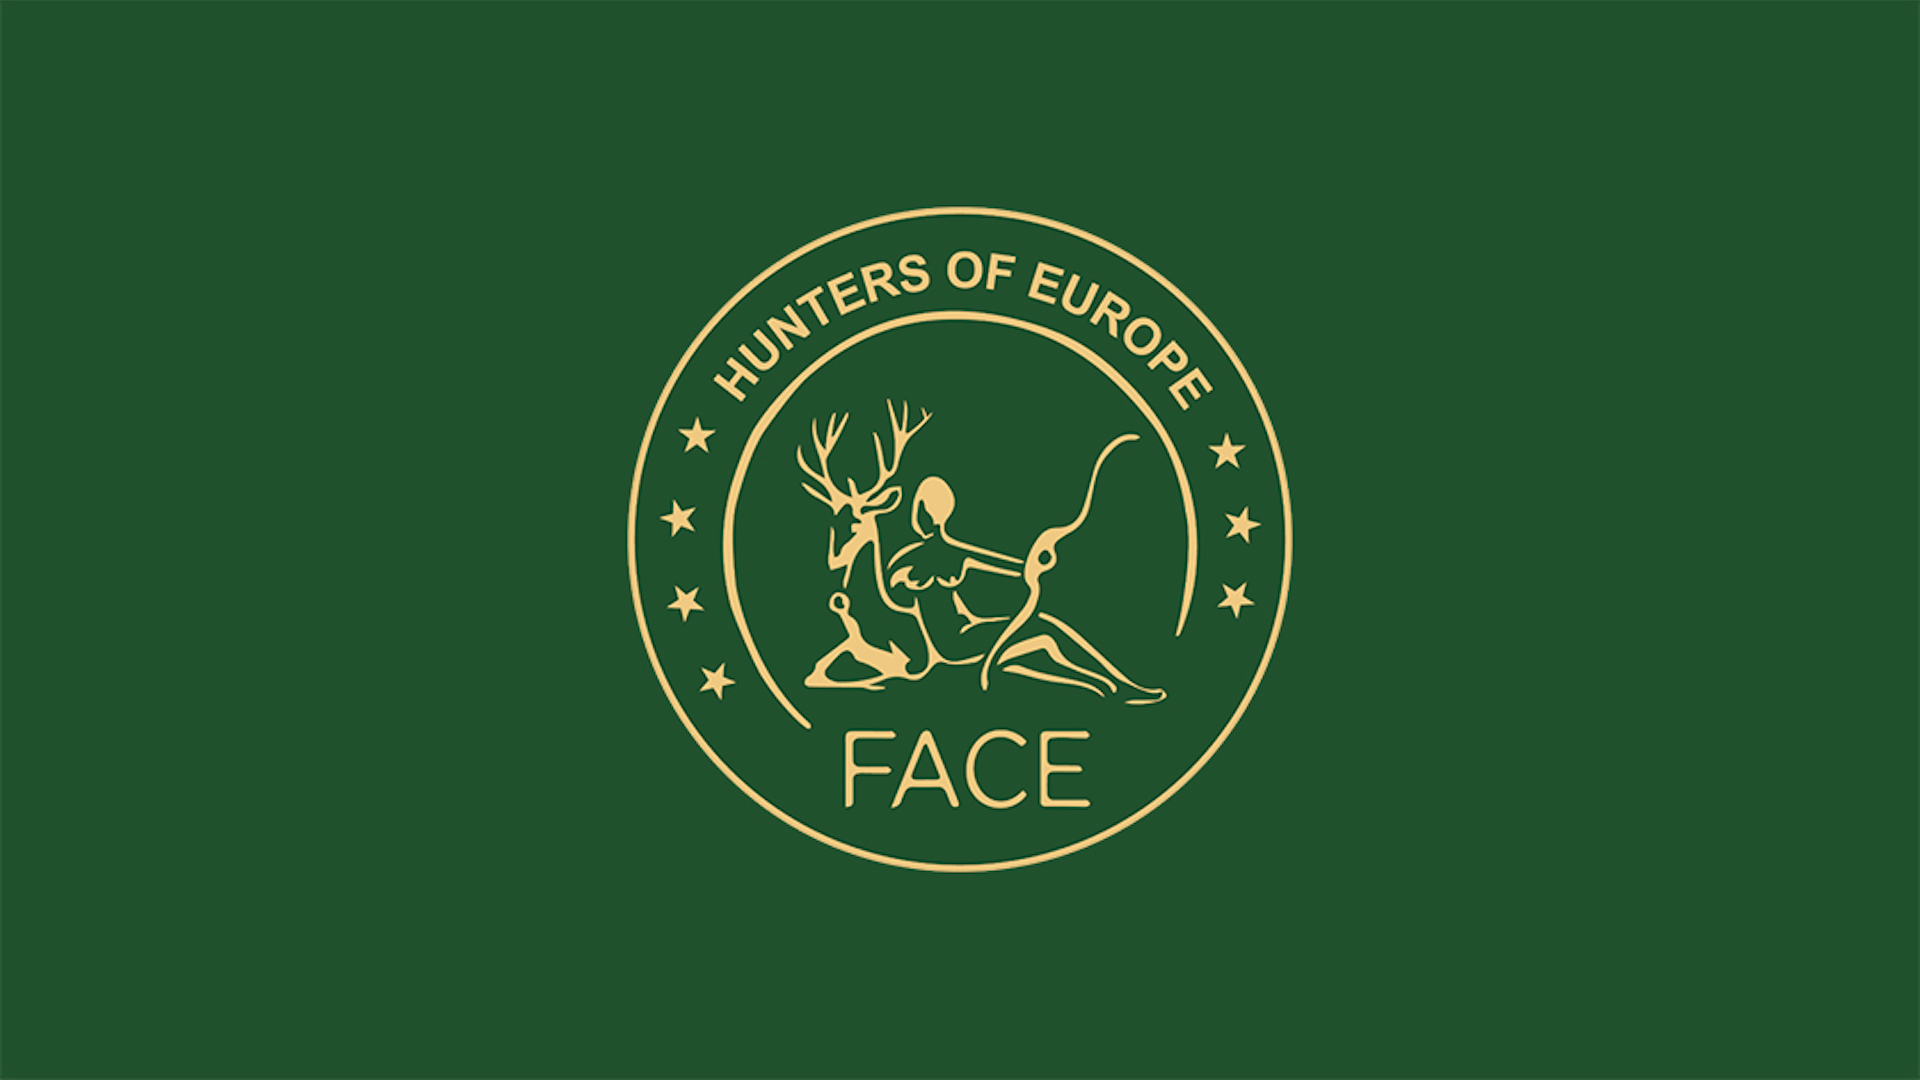 La Face ha tenuto il 25 ottobre scorso la propria assemblea generale